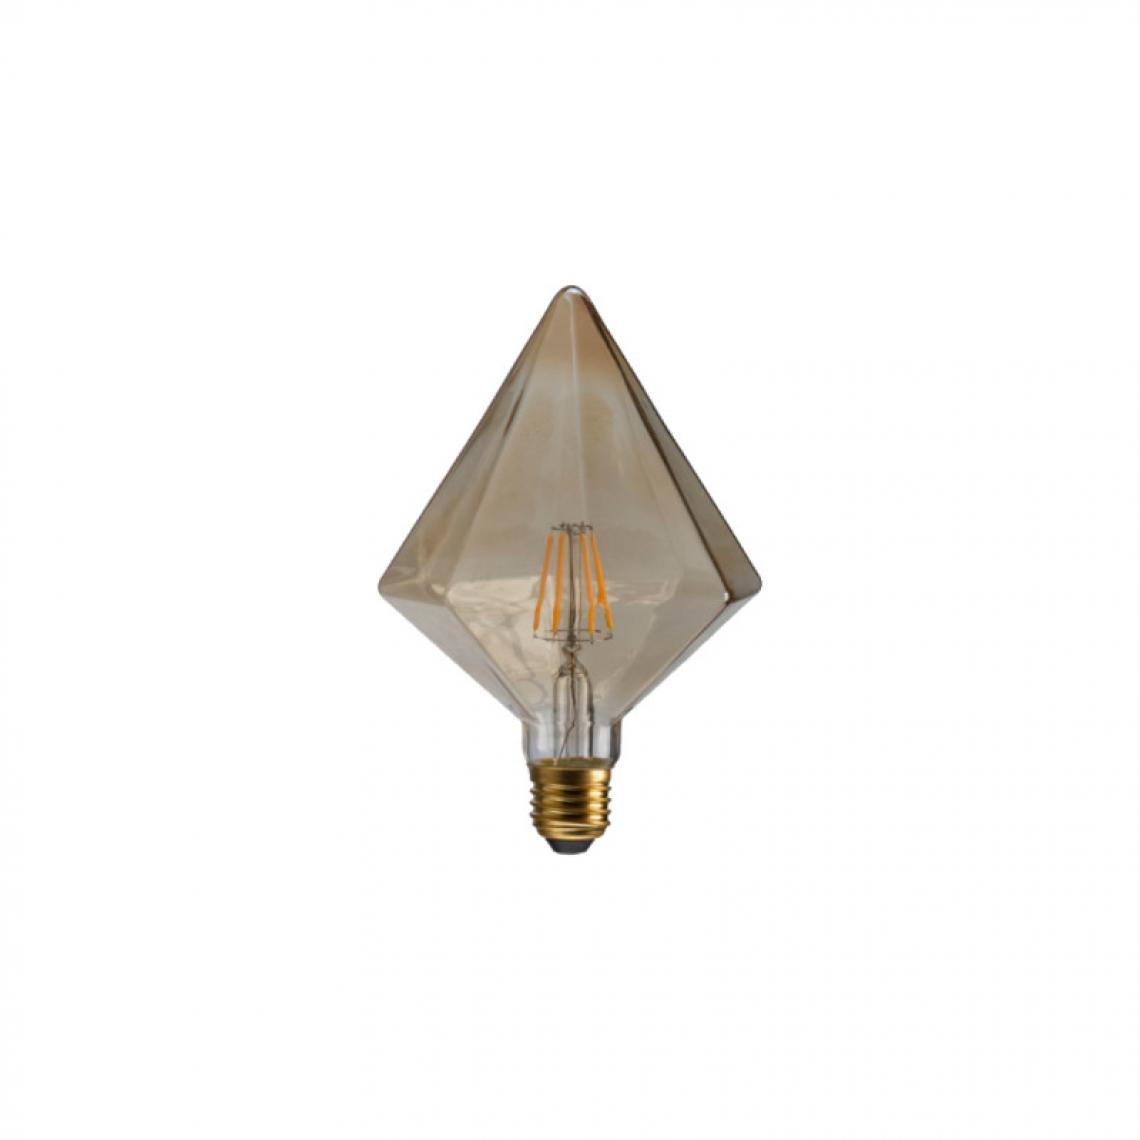 Xxcell - Ampoule LED diamant ambrée XXCELL - 7 W - 720 lumens - 2700 K - E27 - Ampoules LED